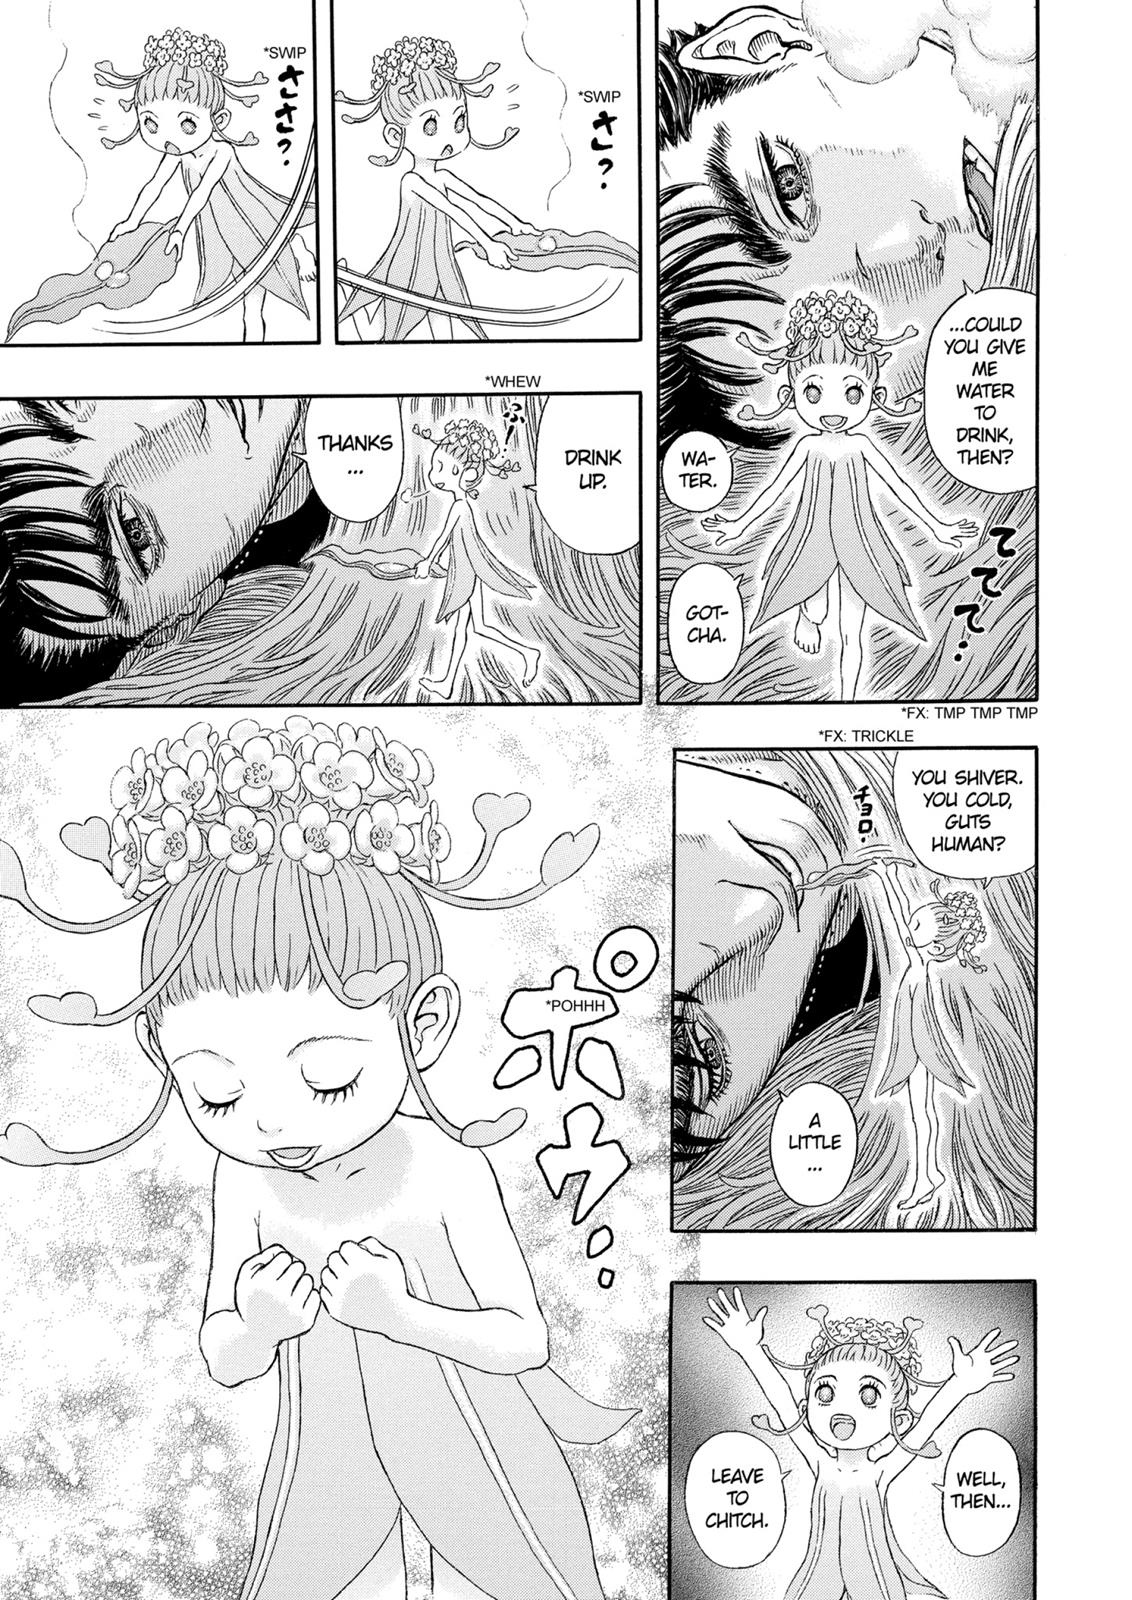 Berserk Manga Chapter 330 image 10